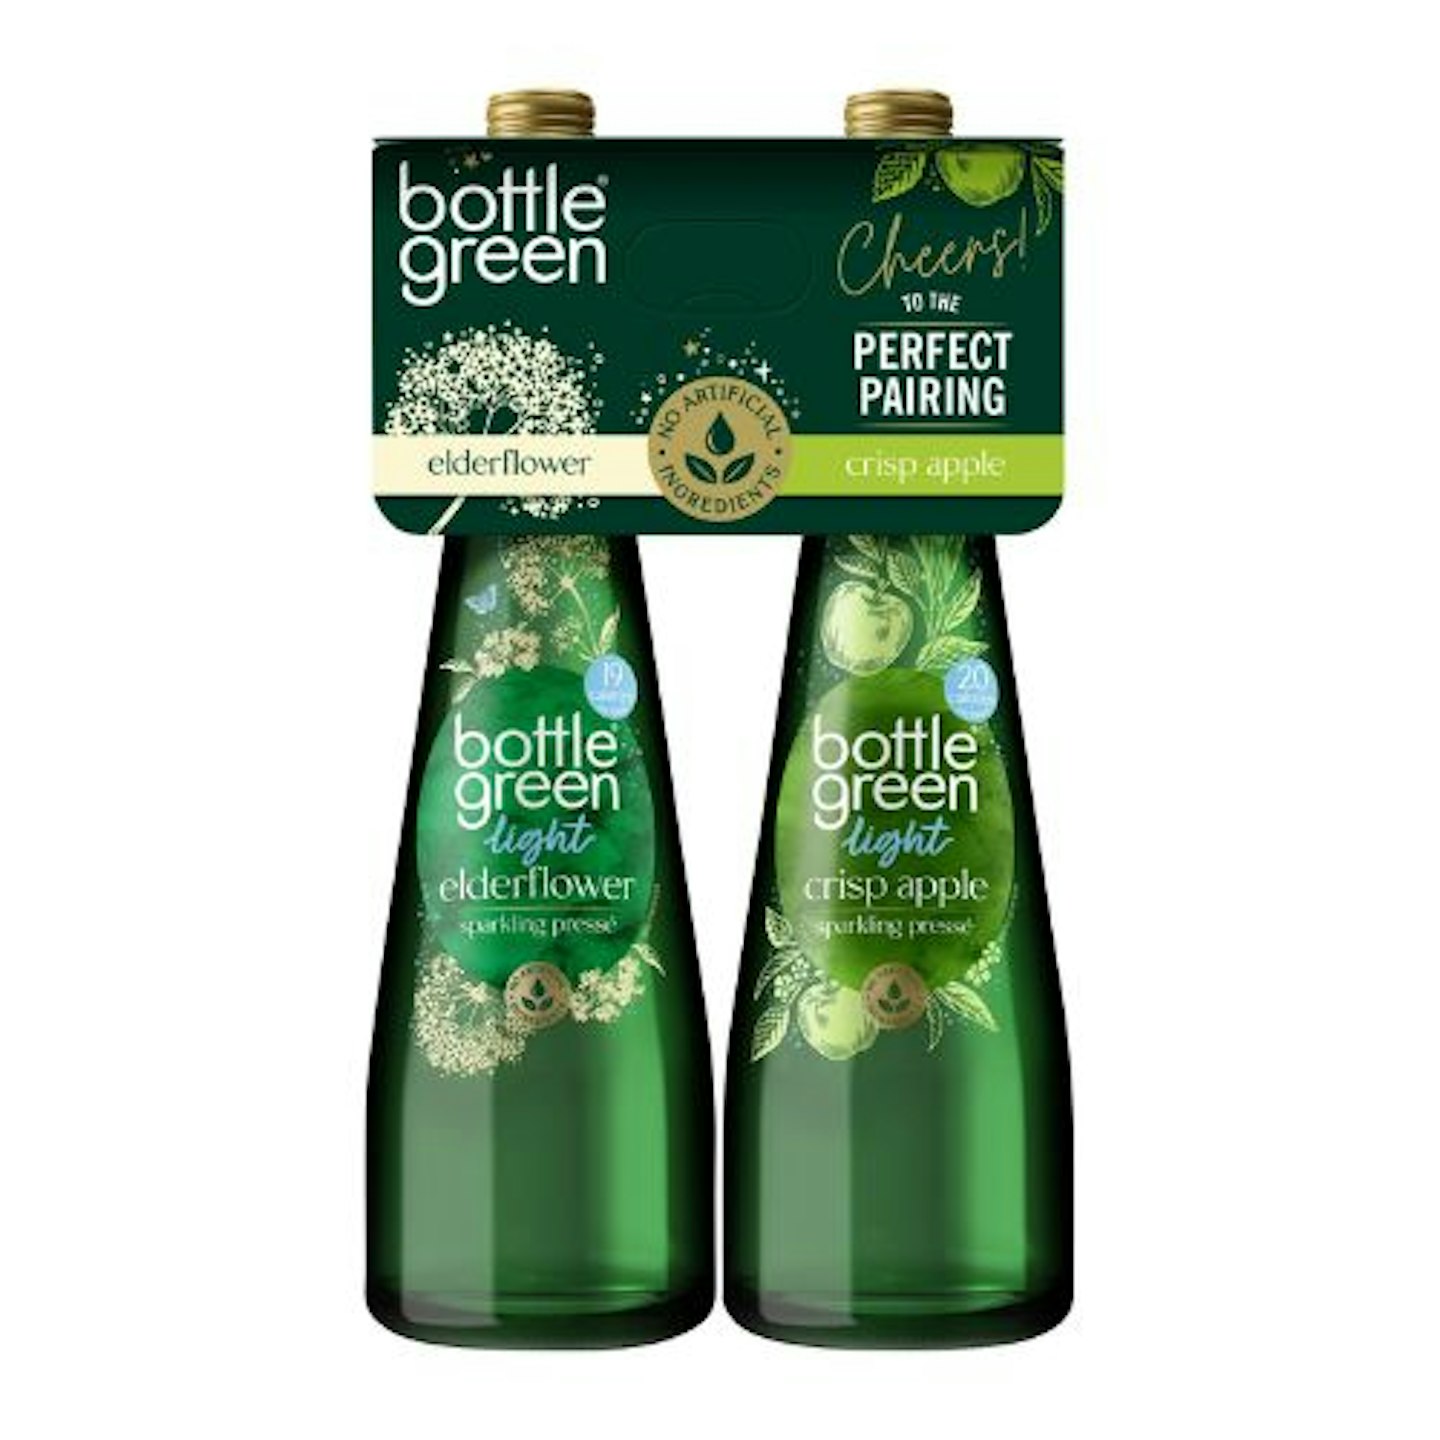 Bottlegreen Light Elderflower & Crisp Apple Sparkling Presse